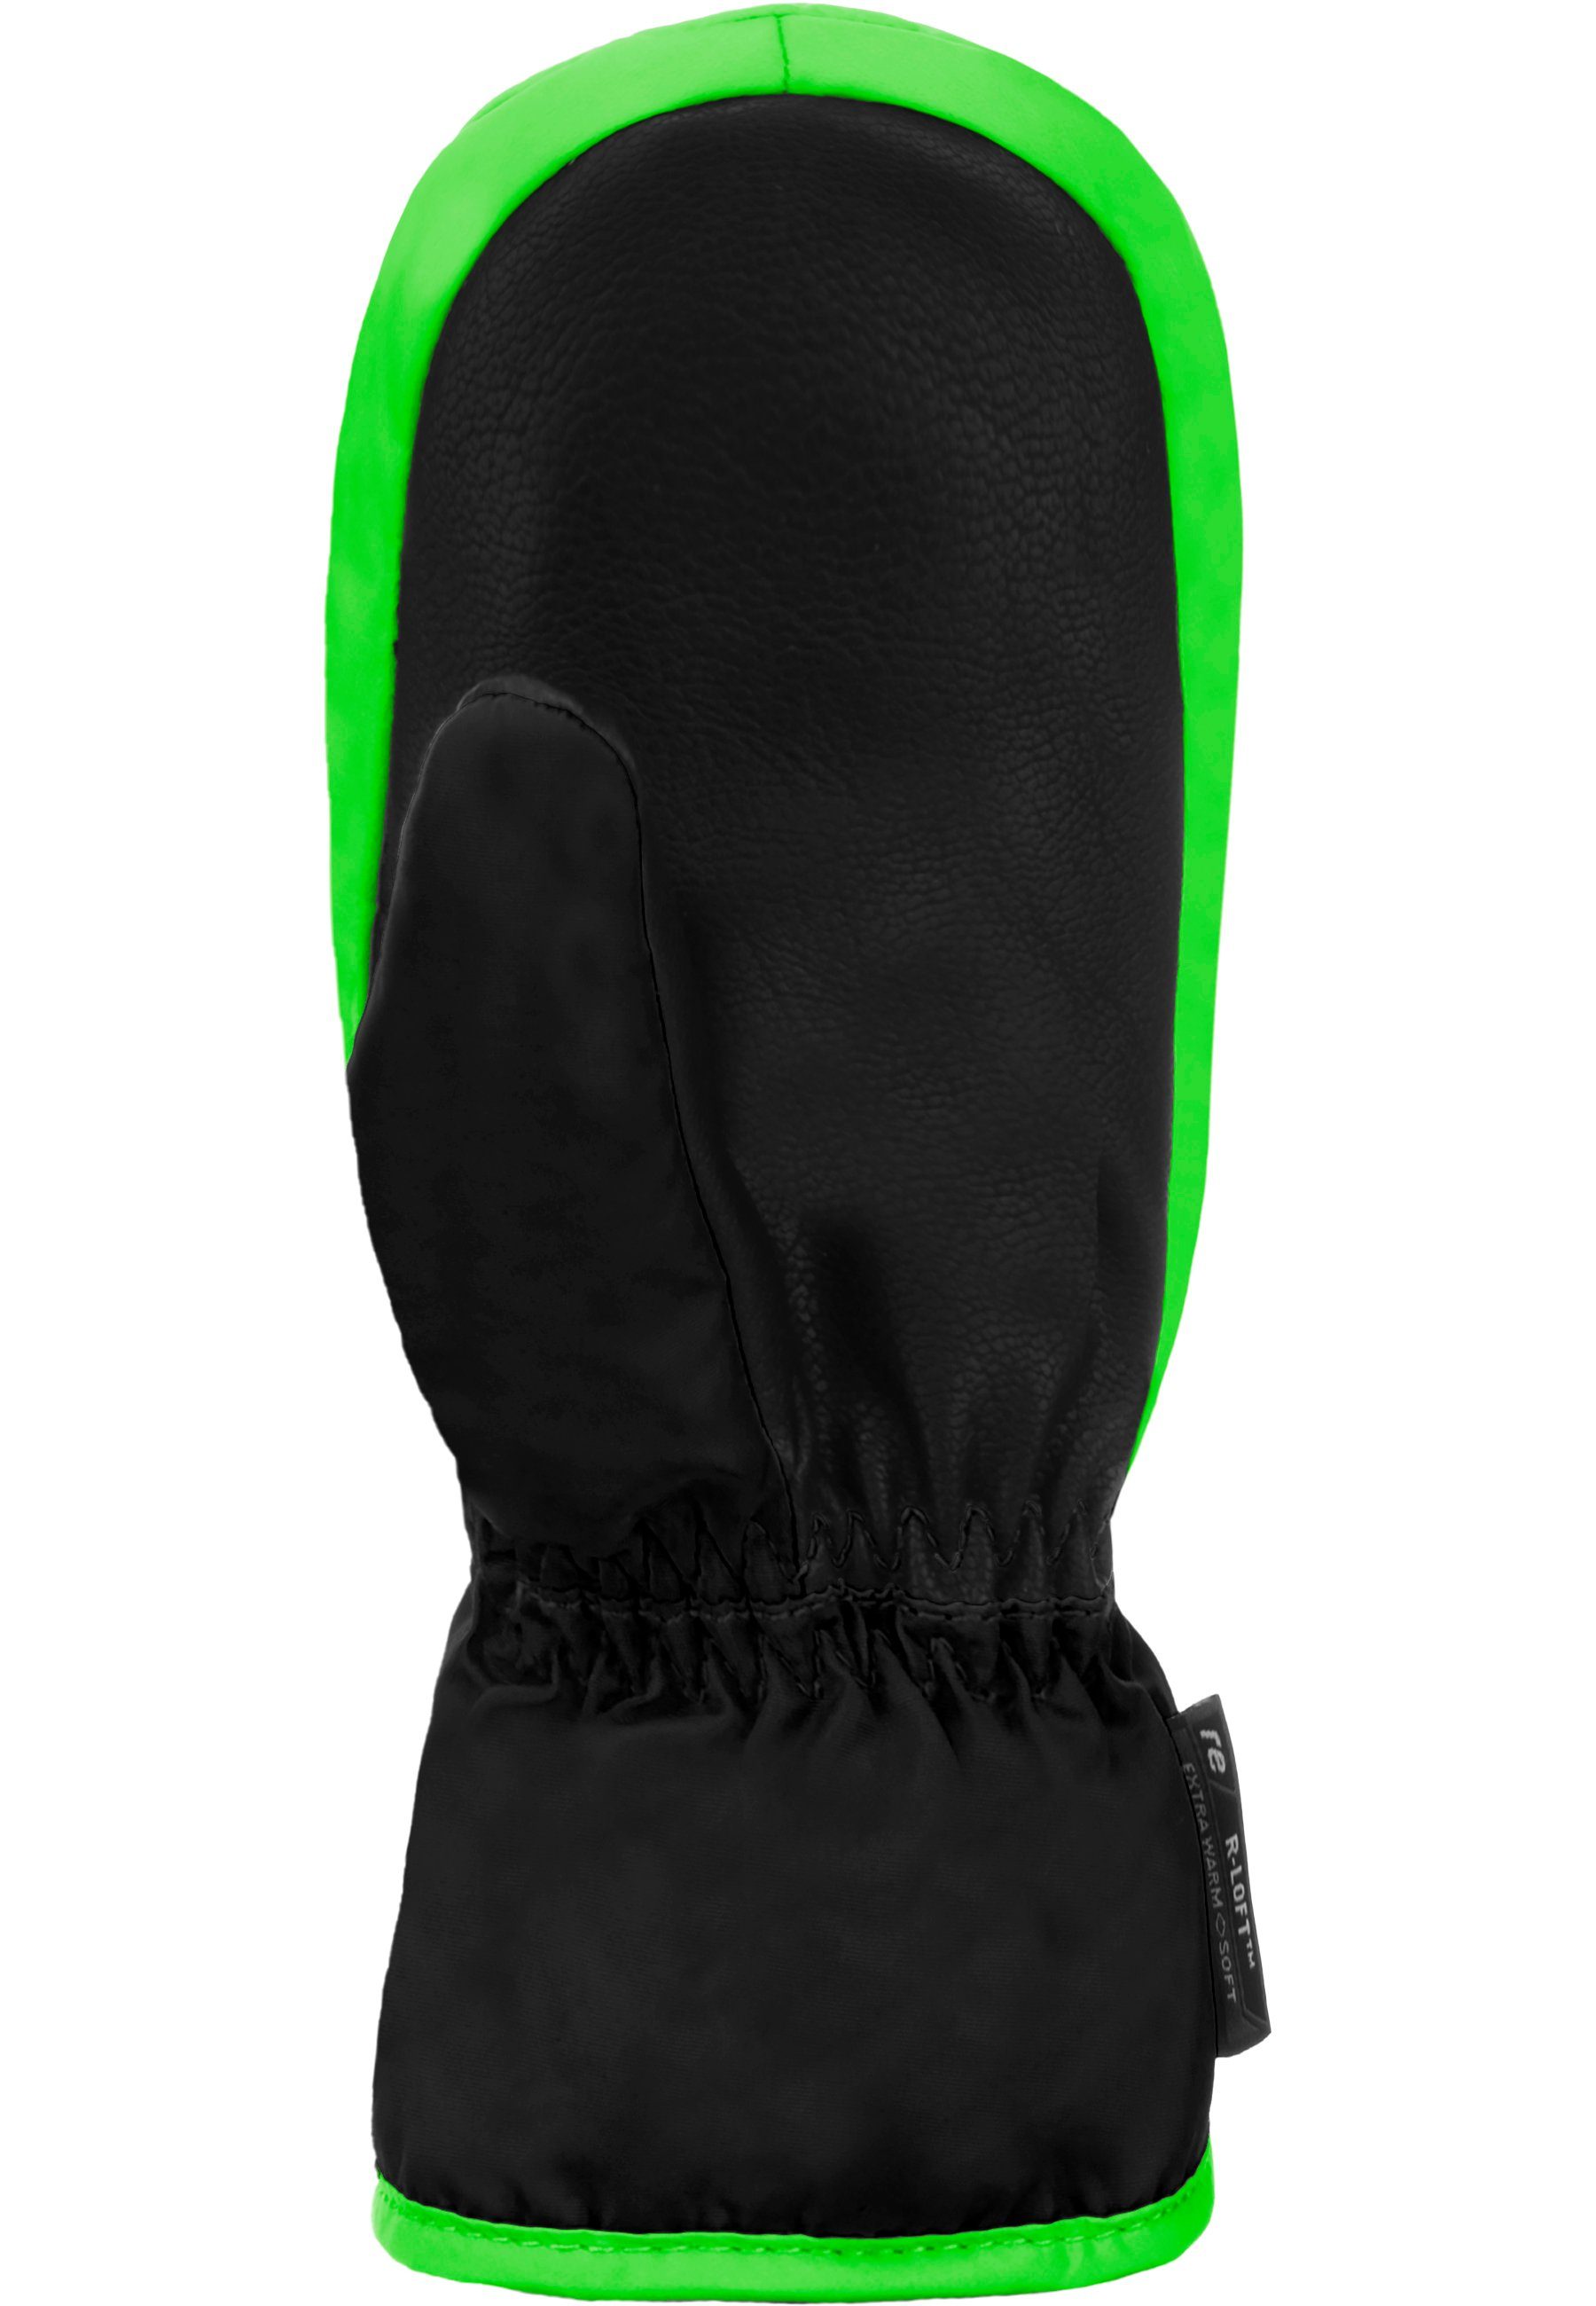 Fäustlinge Mitten langem grün-schwarz mit Reusch Ben extra Reißverschluss